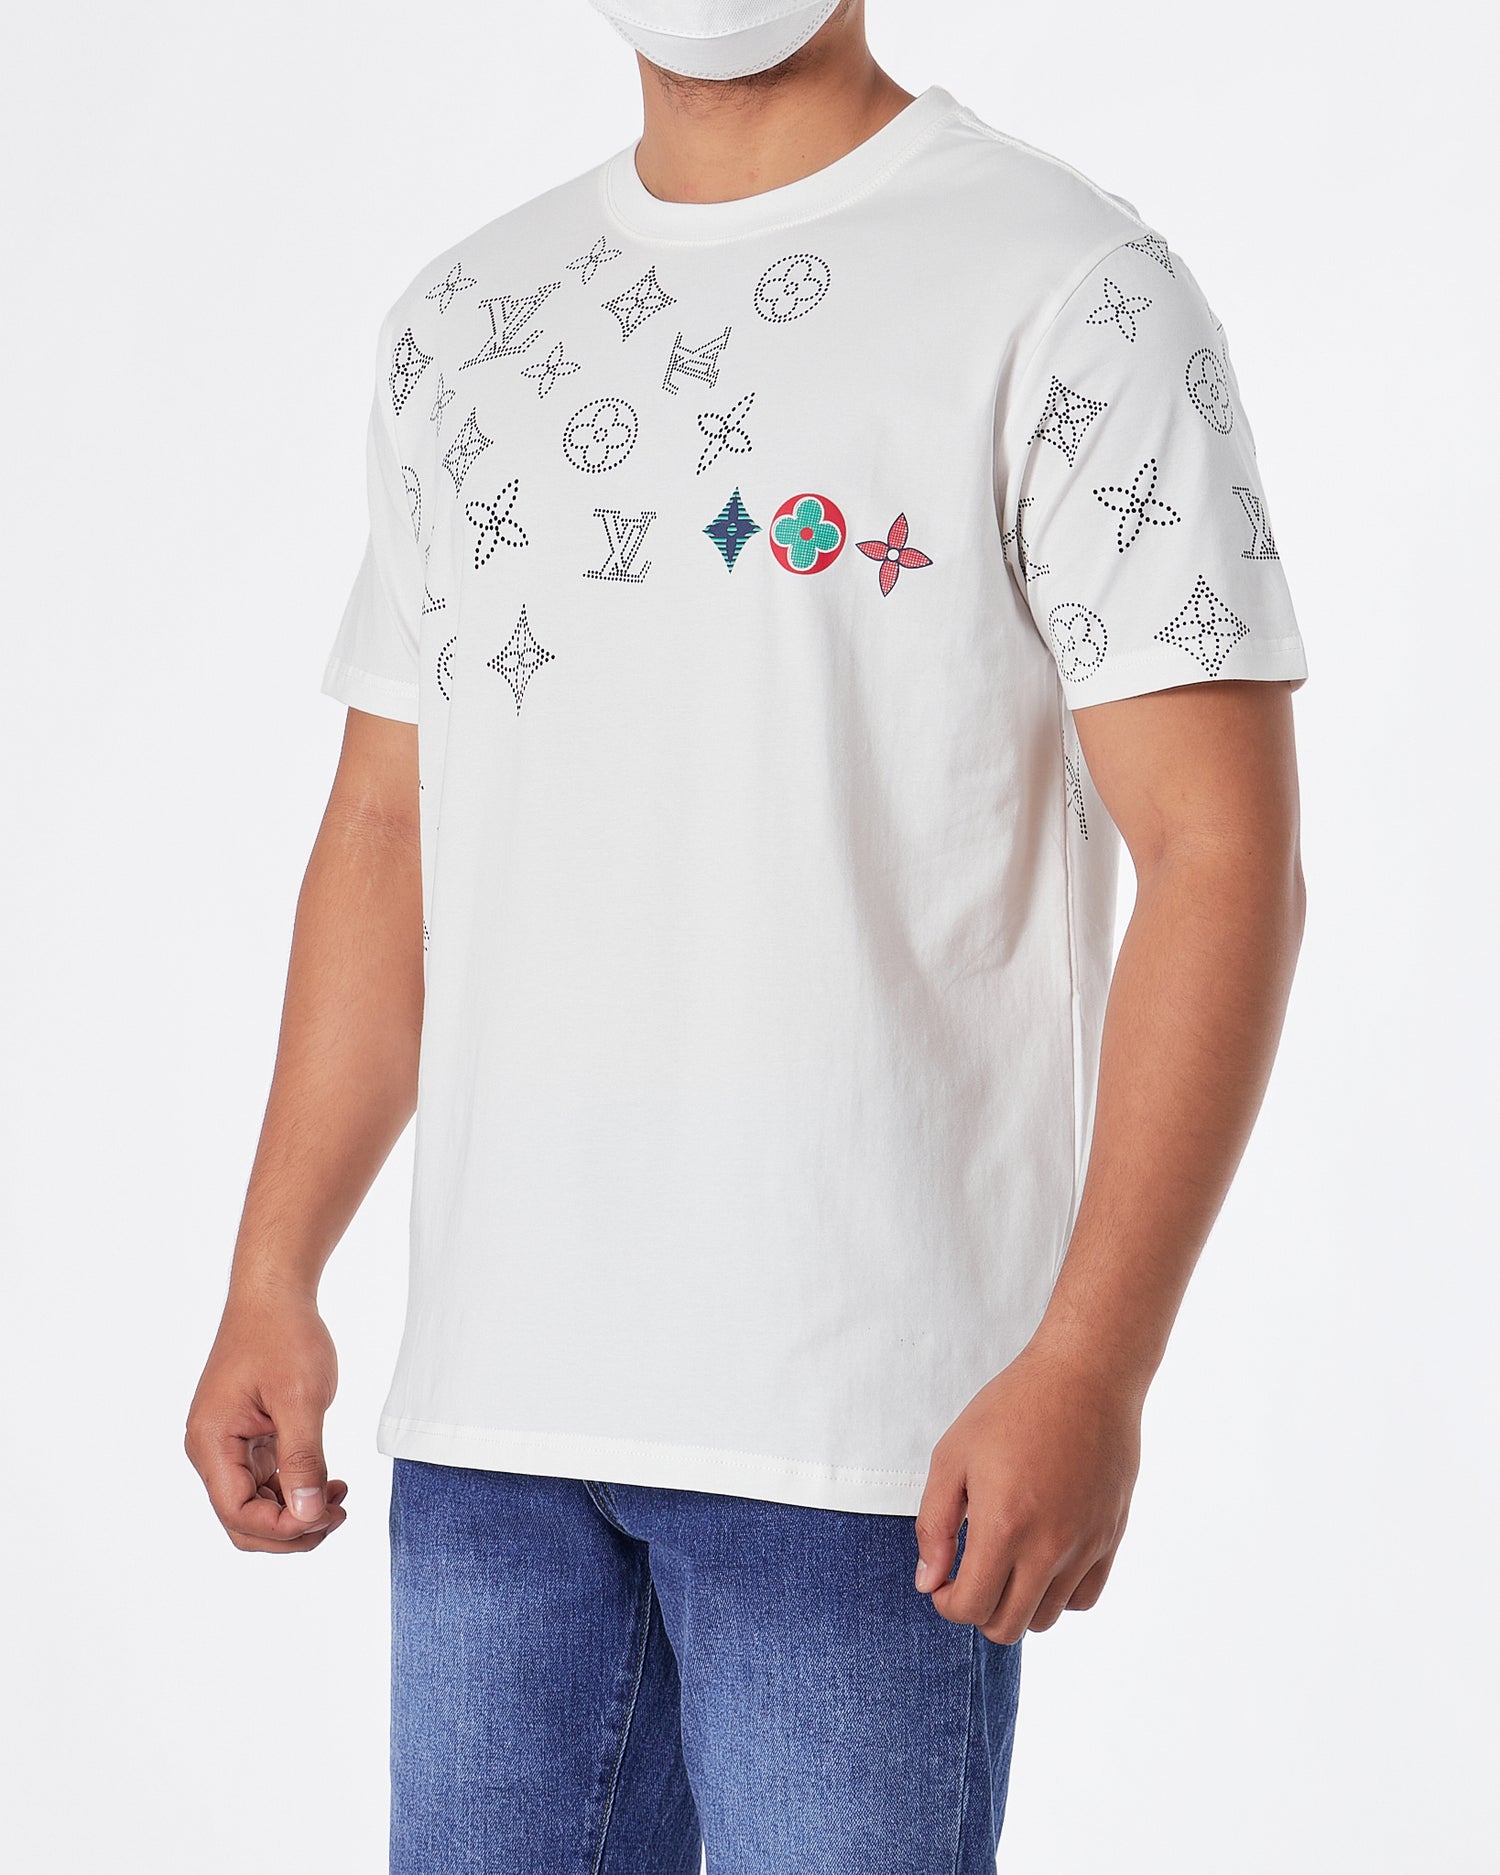 LV Monogram Embroidered Men White T-Shirt 22.90